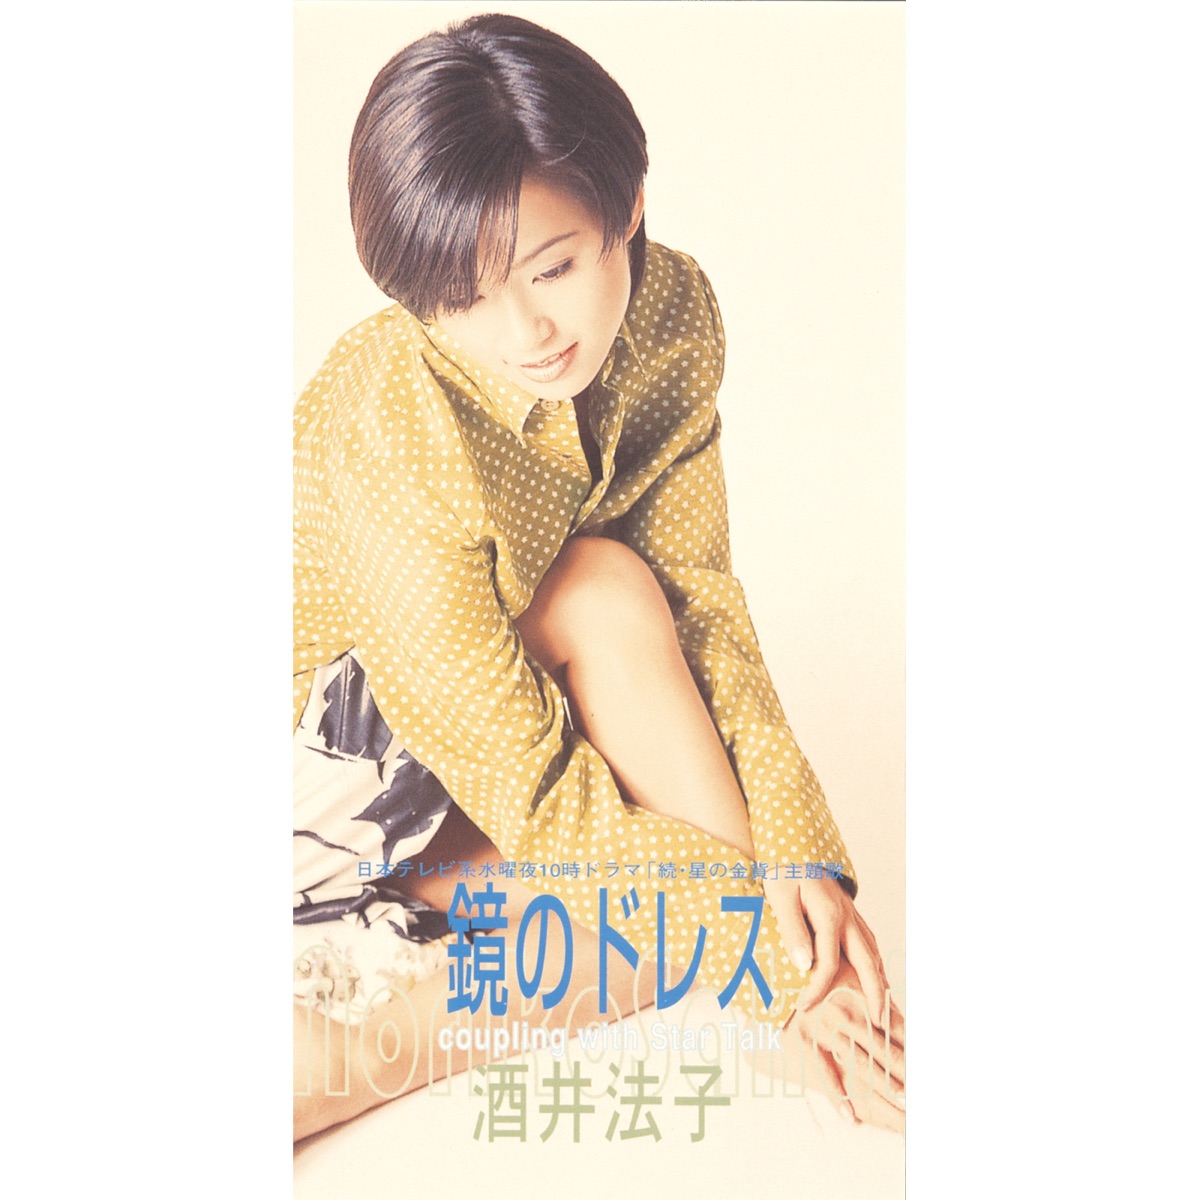 酒井法子 - 鏡のドレス - EP (1996) [iTunes Plus AAC M4A]-新房子